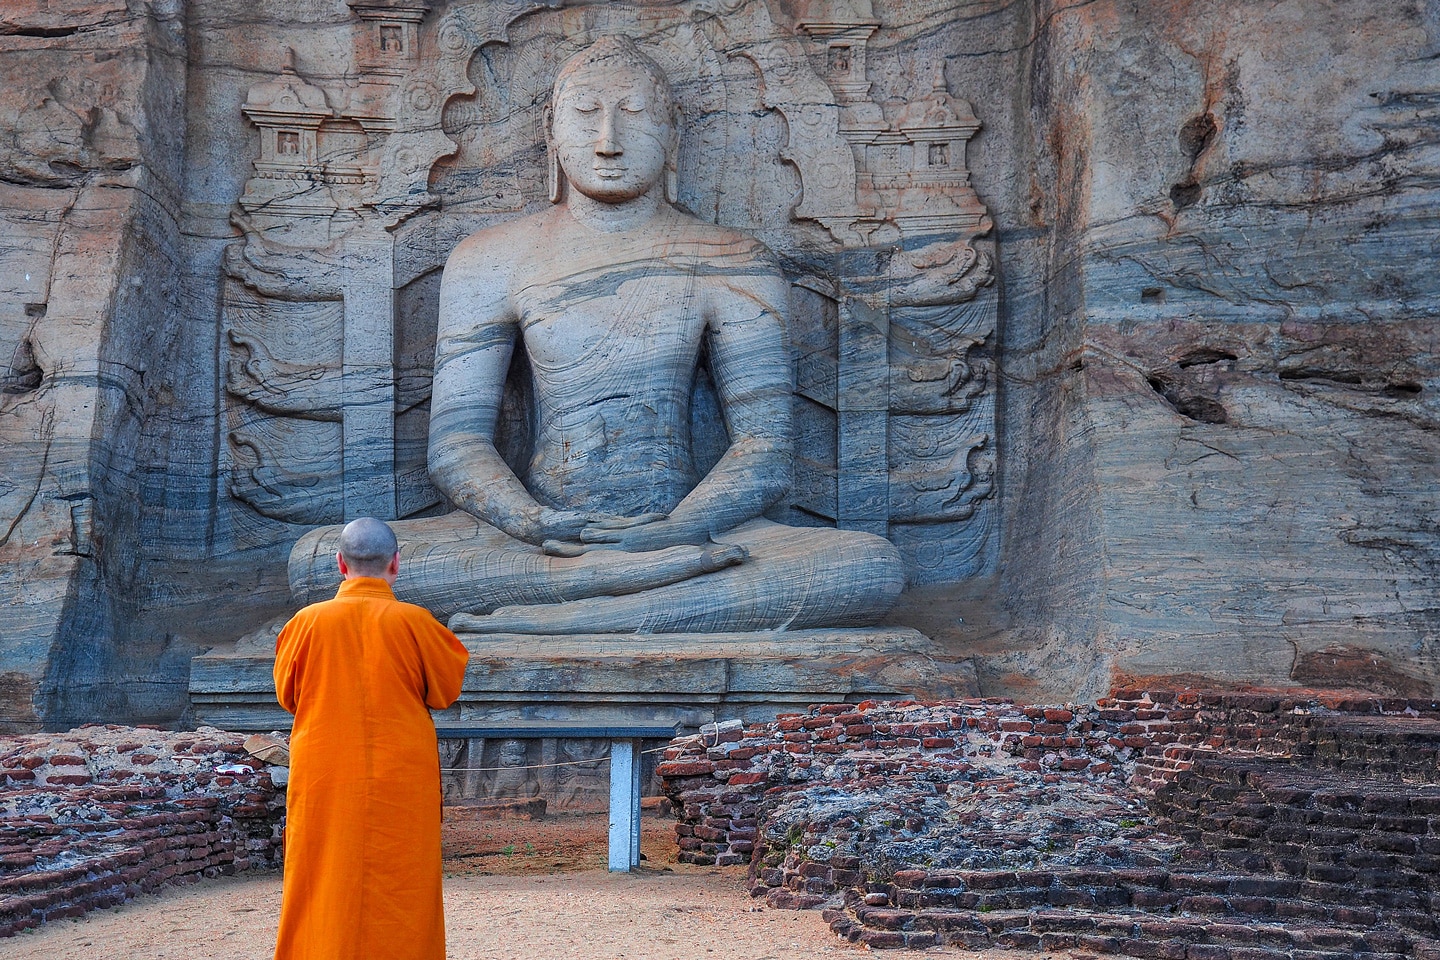 Unique monolith Buddha statue in Polonnaruwa temple - capital of Ceylon,UNESCO World Heritage Site